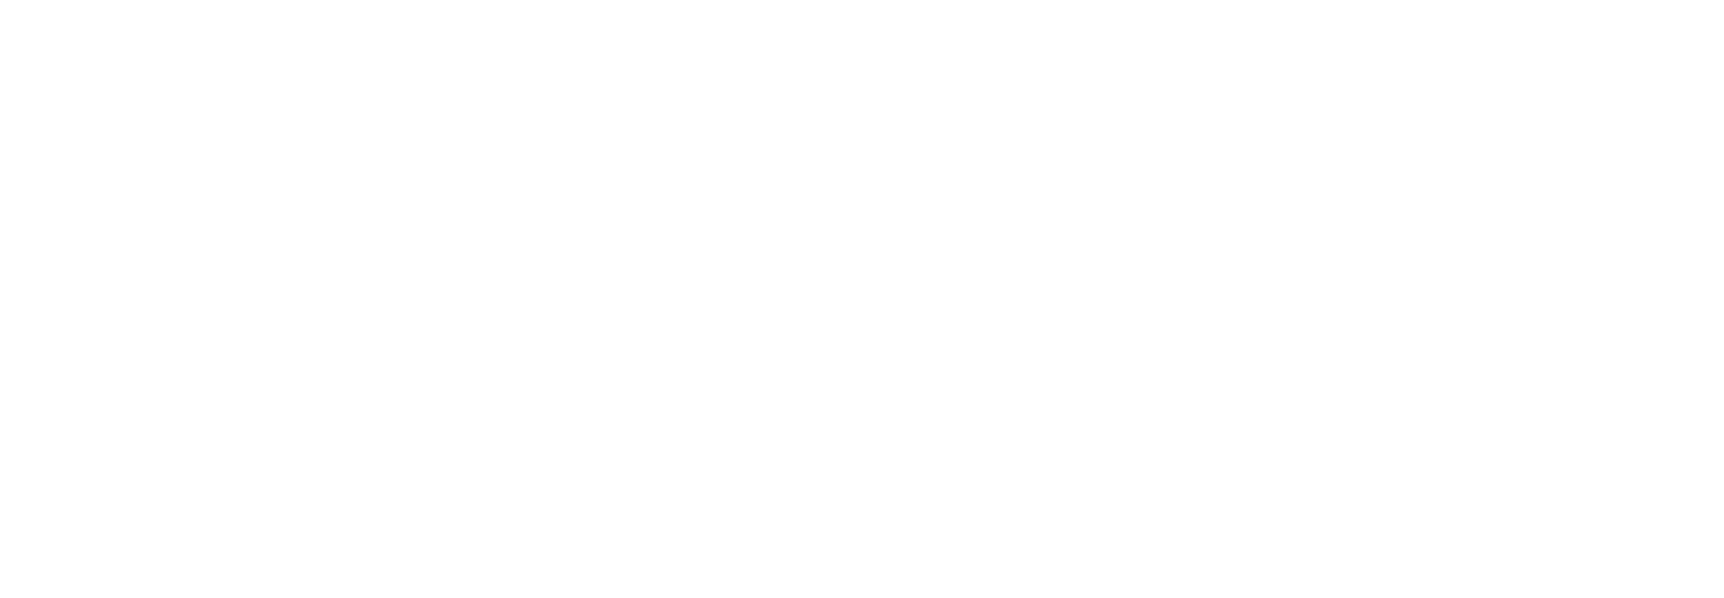 Get Informed, Event Results